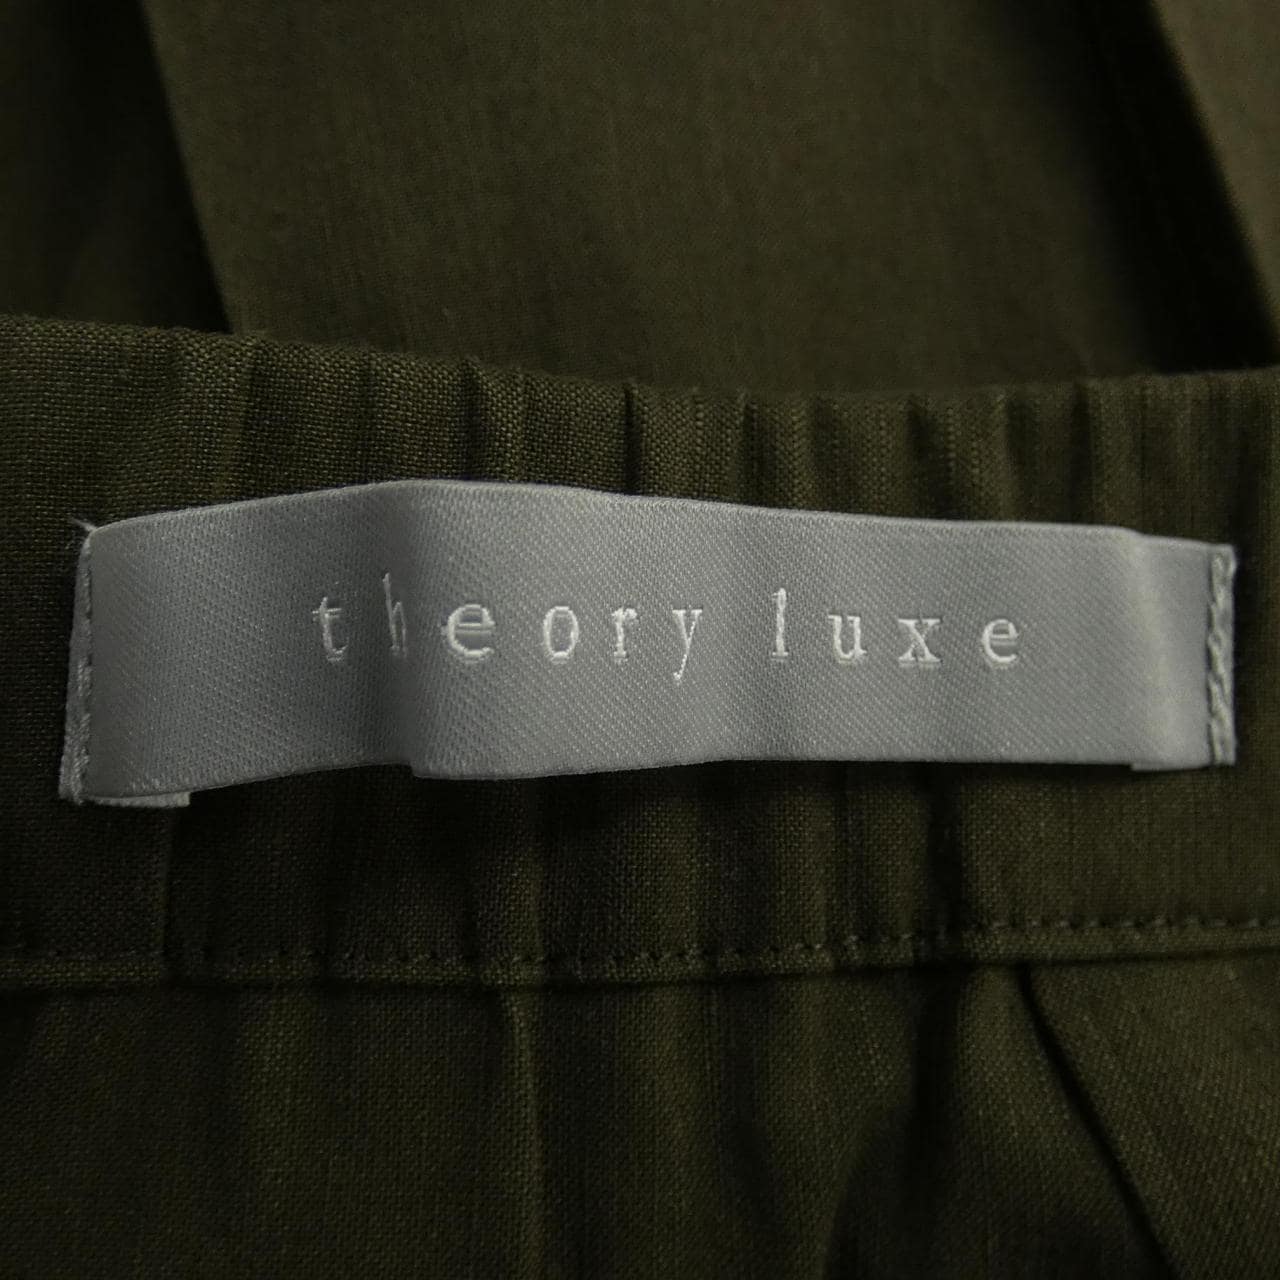 塞奧利露Theory luxe裙